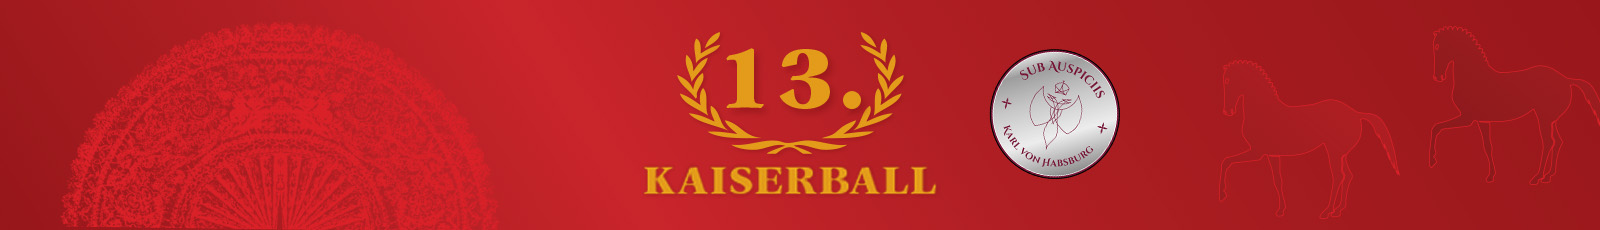 Kaiserball